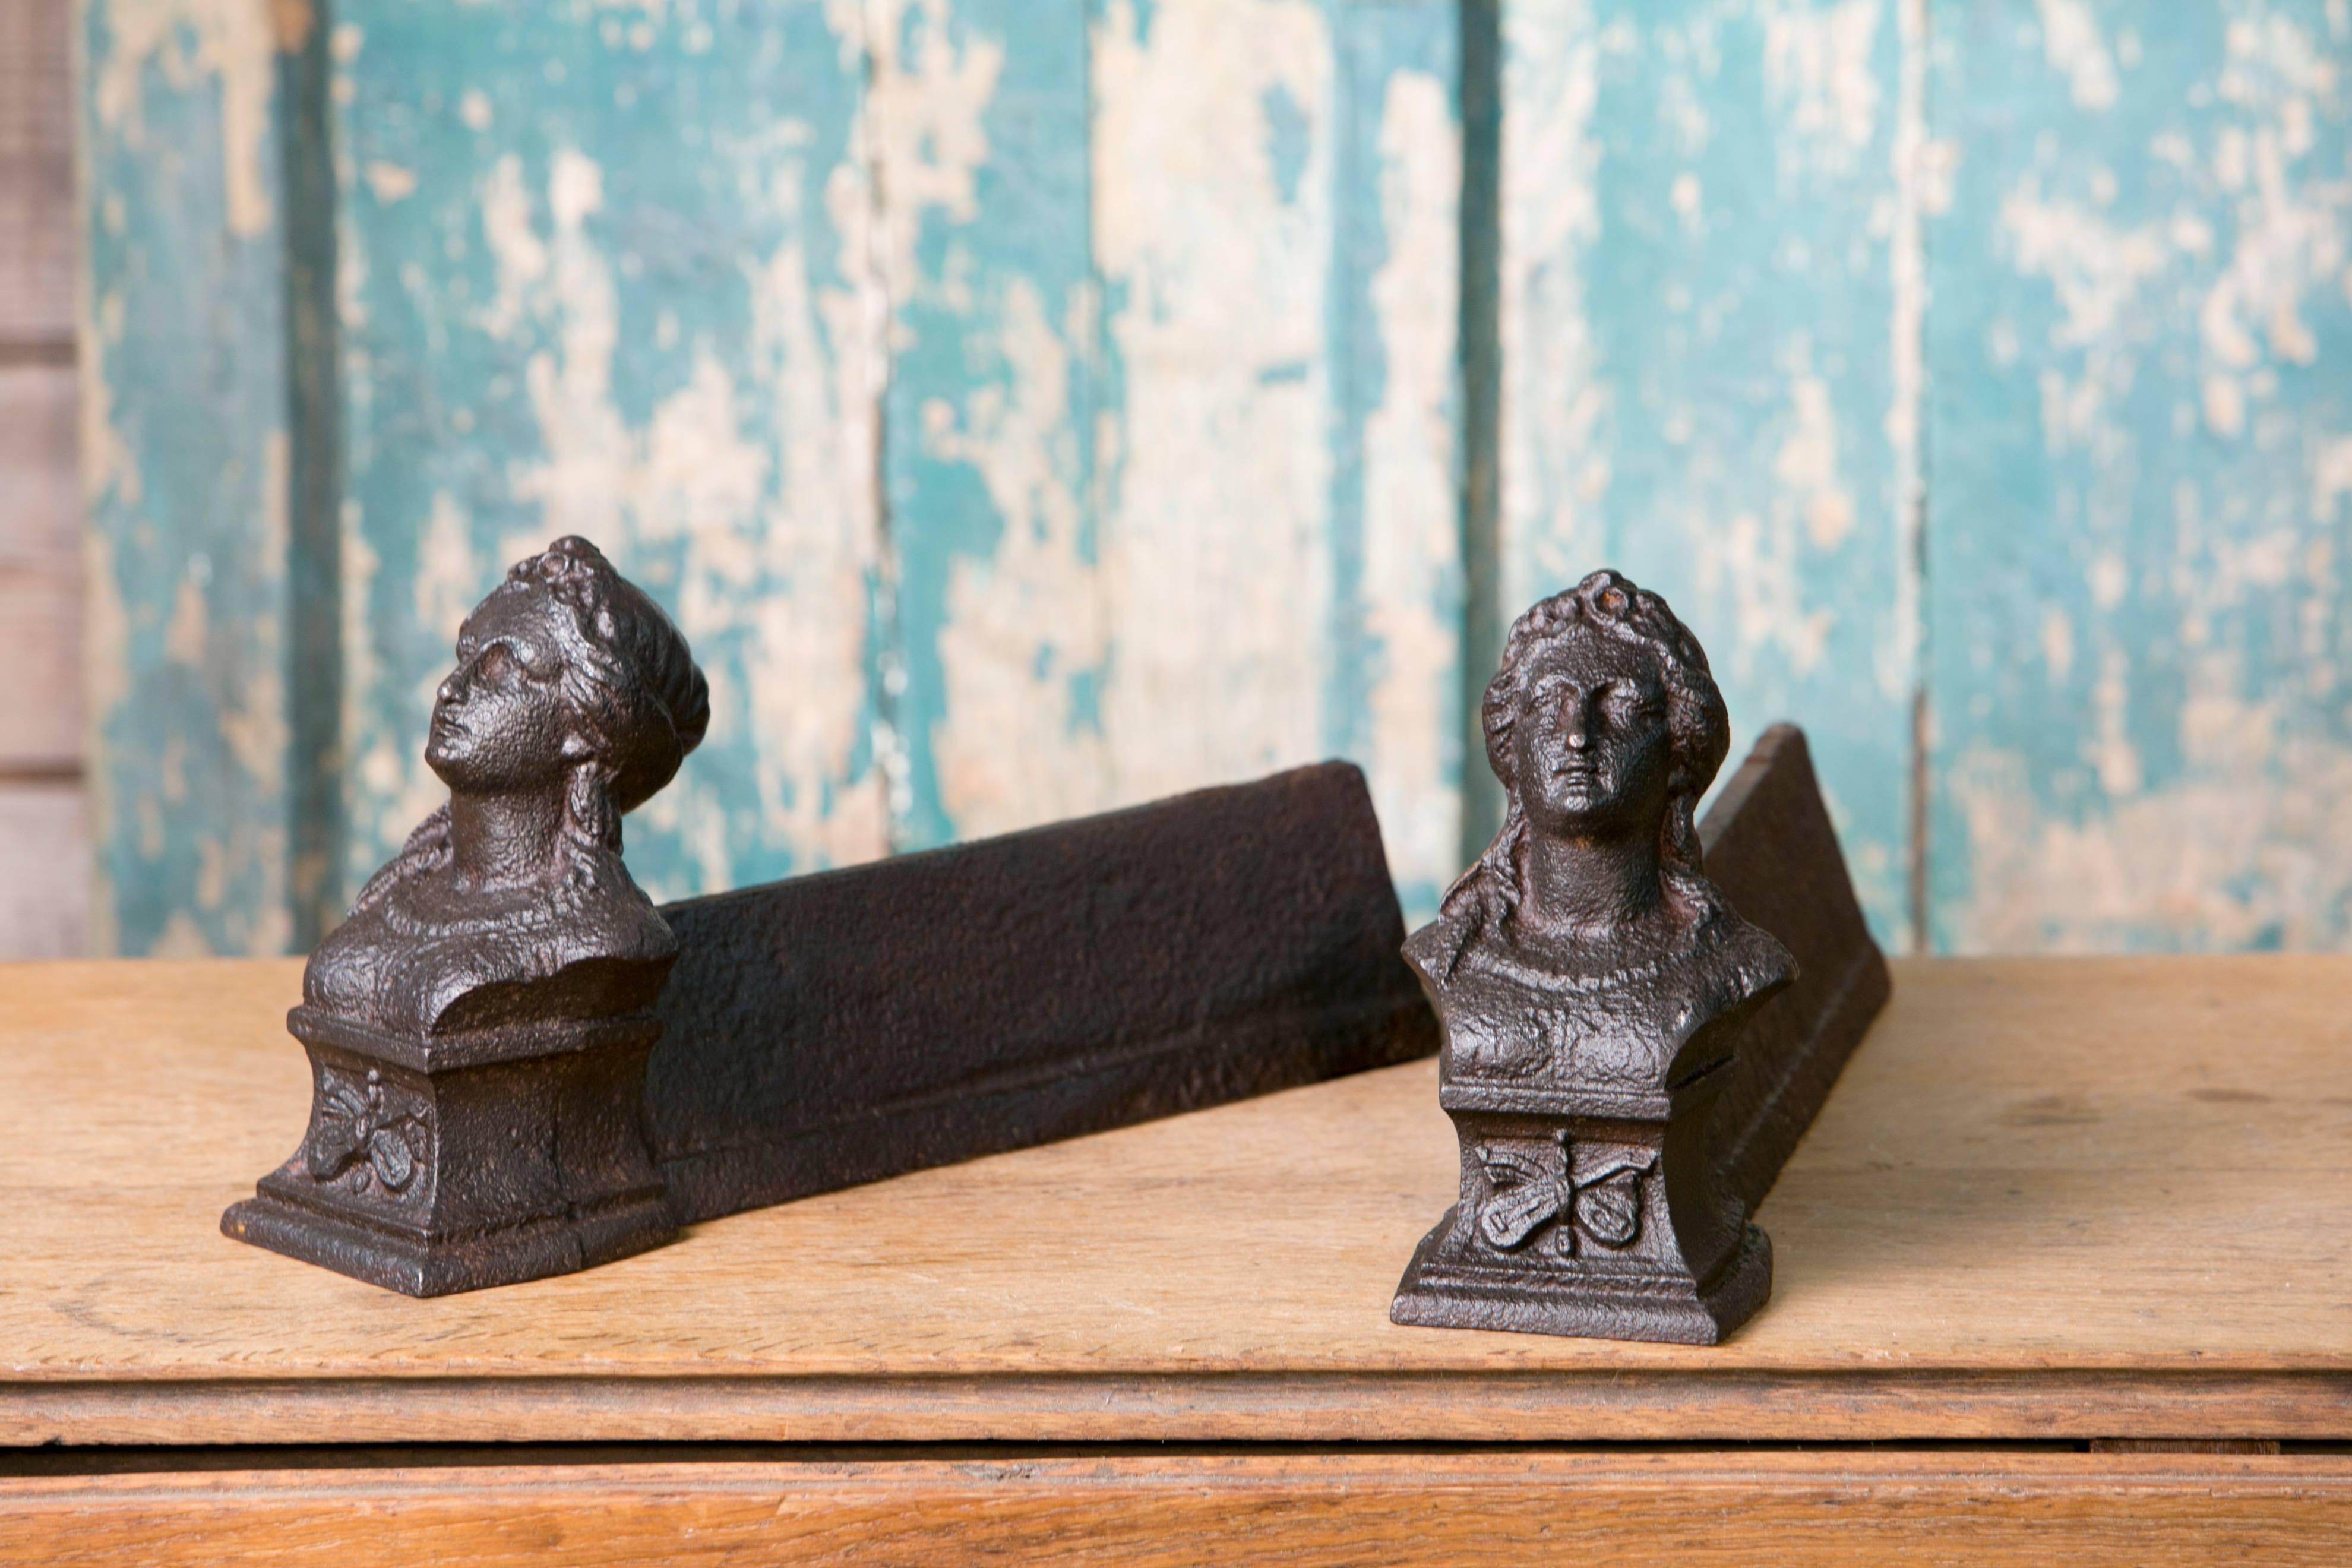 Paires assorties de chenets de cheminée figuratifs en fer de France, vers les années 1800. Le prix est pour une paire de votre choix. Les mesures indiquées correspondent à la paire de l'image 1.
La paire de l'image 2 mesure 4 pouces de largeur x 14